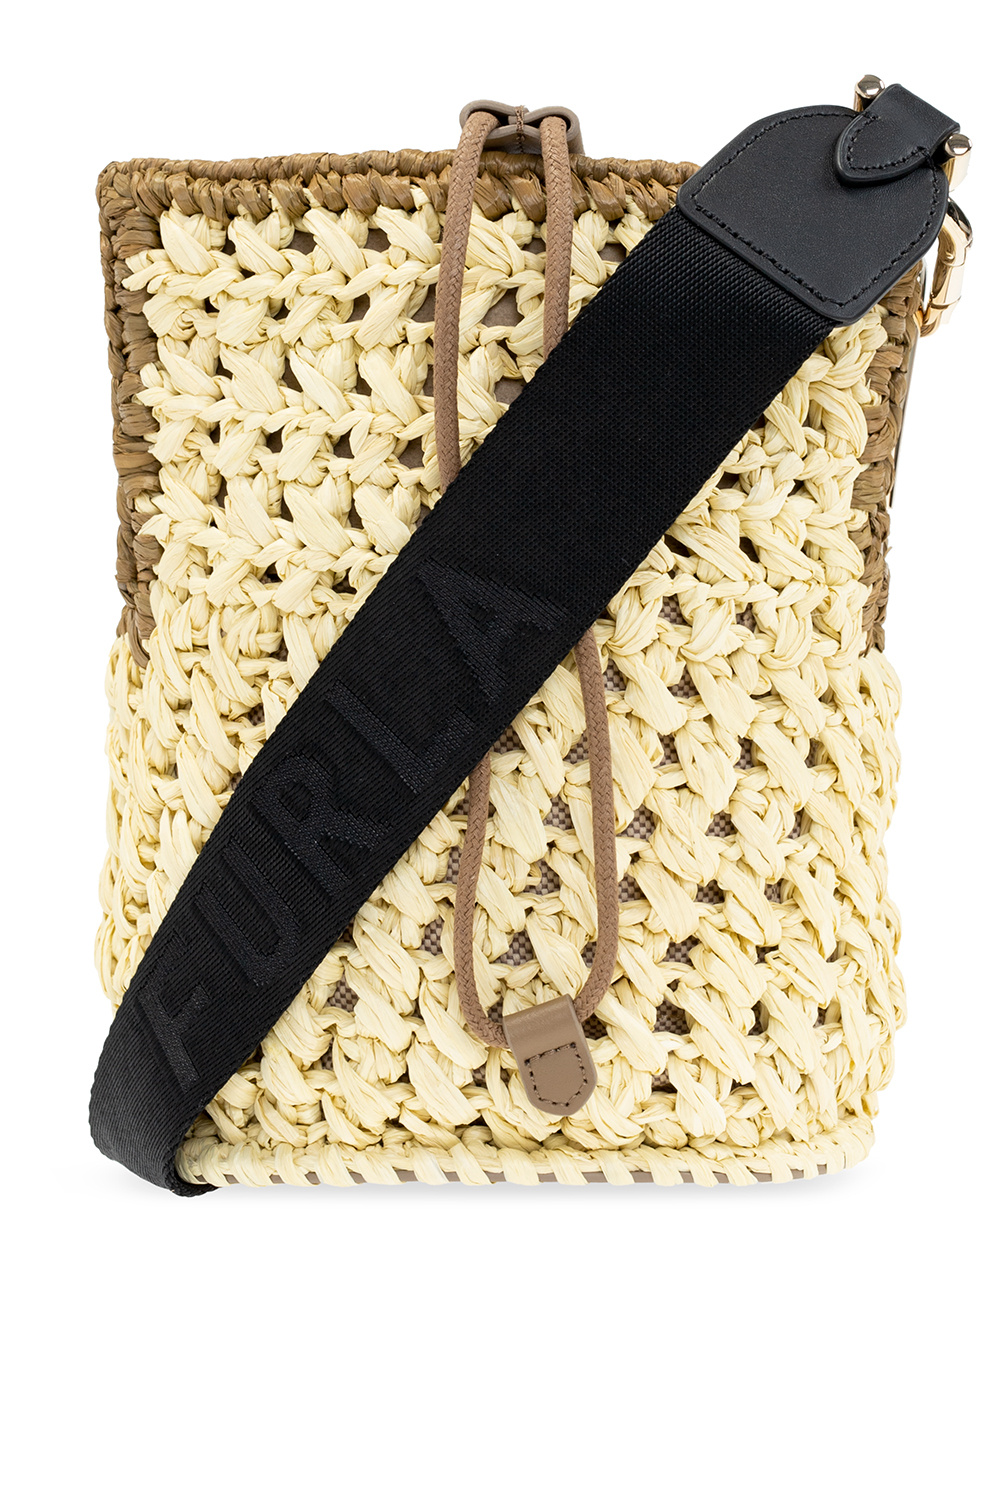 Striped woven raffia la Prima bag with webbing shoulder strap